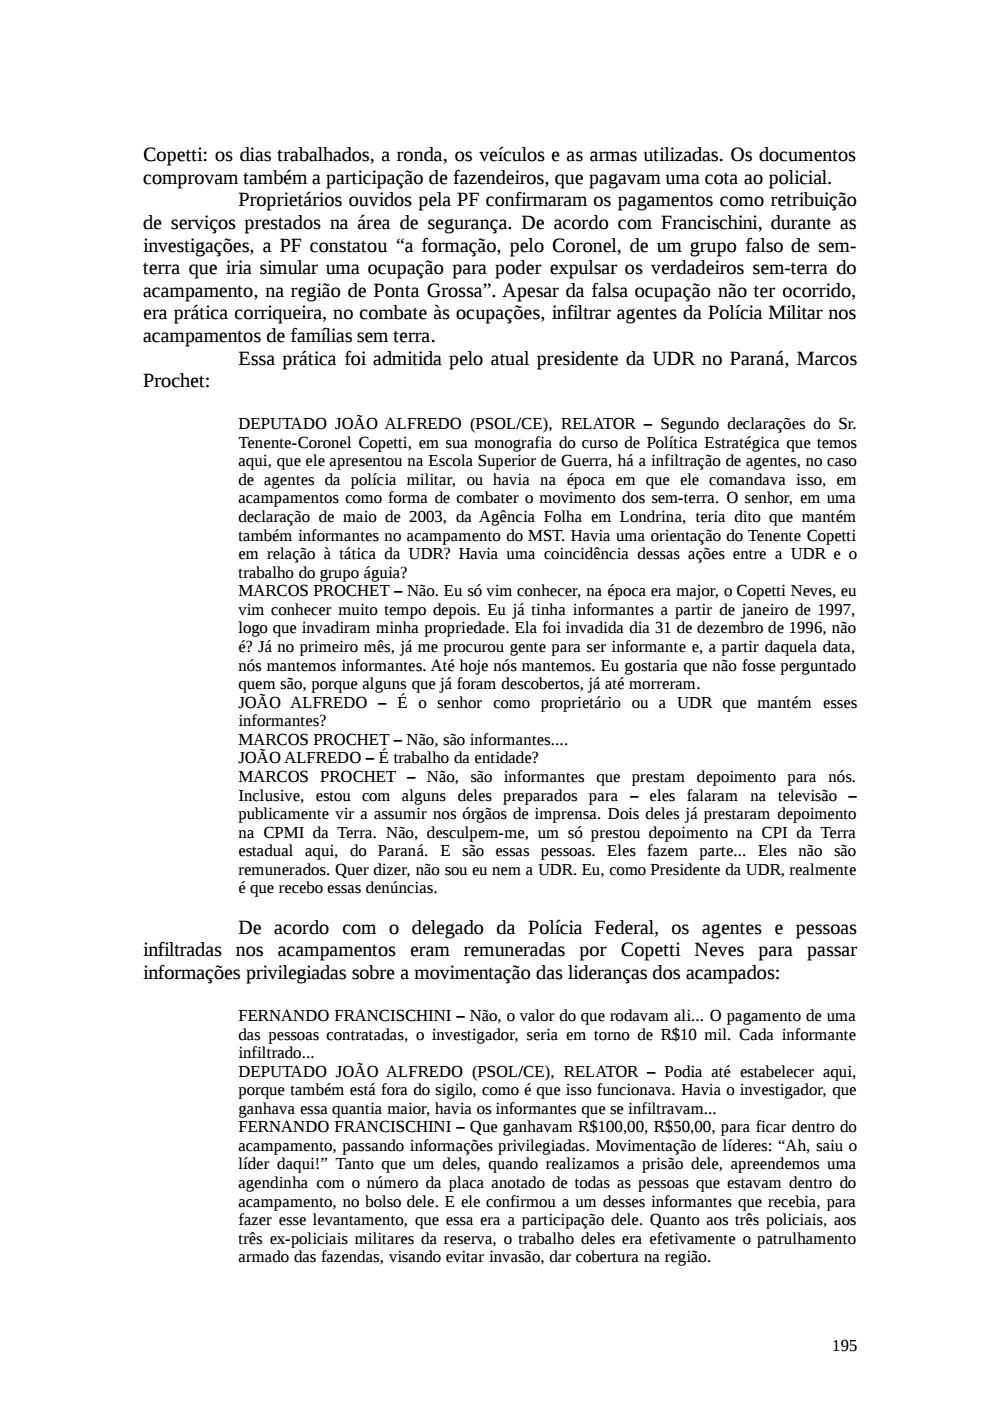 Page 195 from Relatório final da comissão